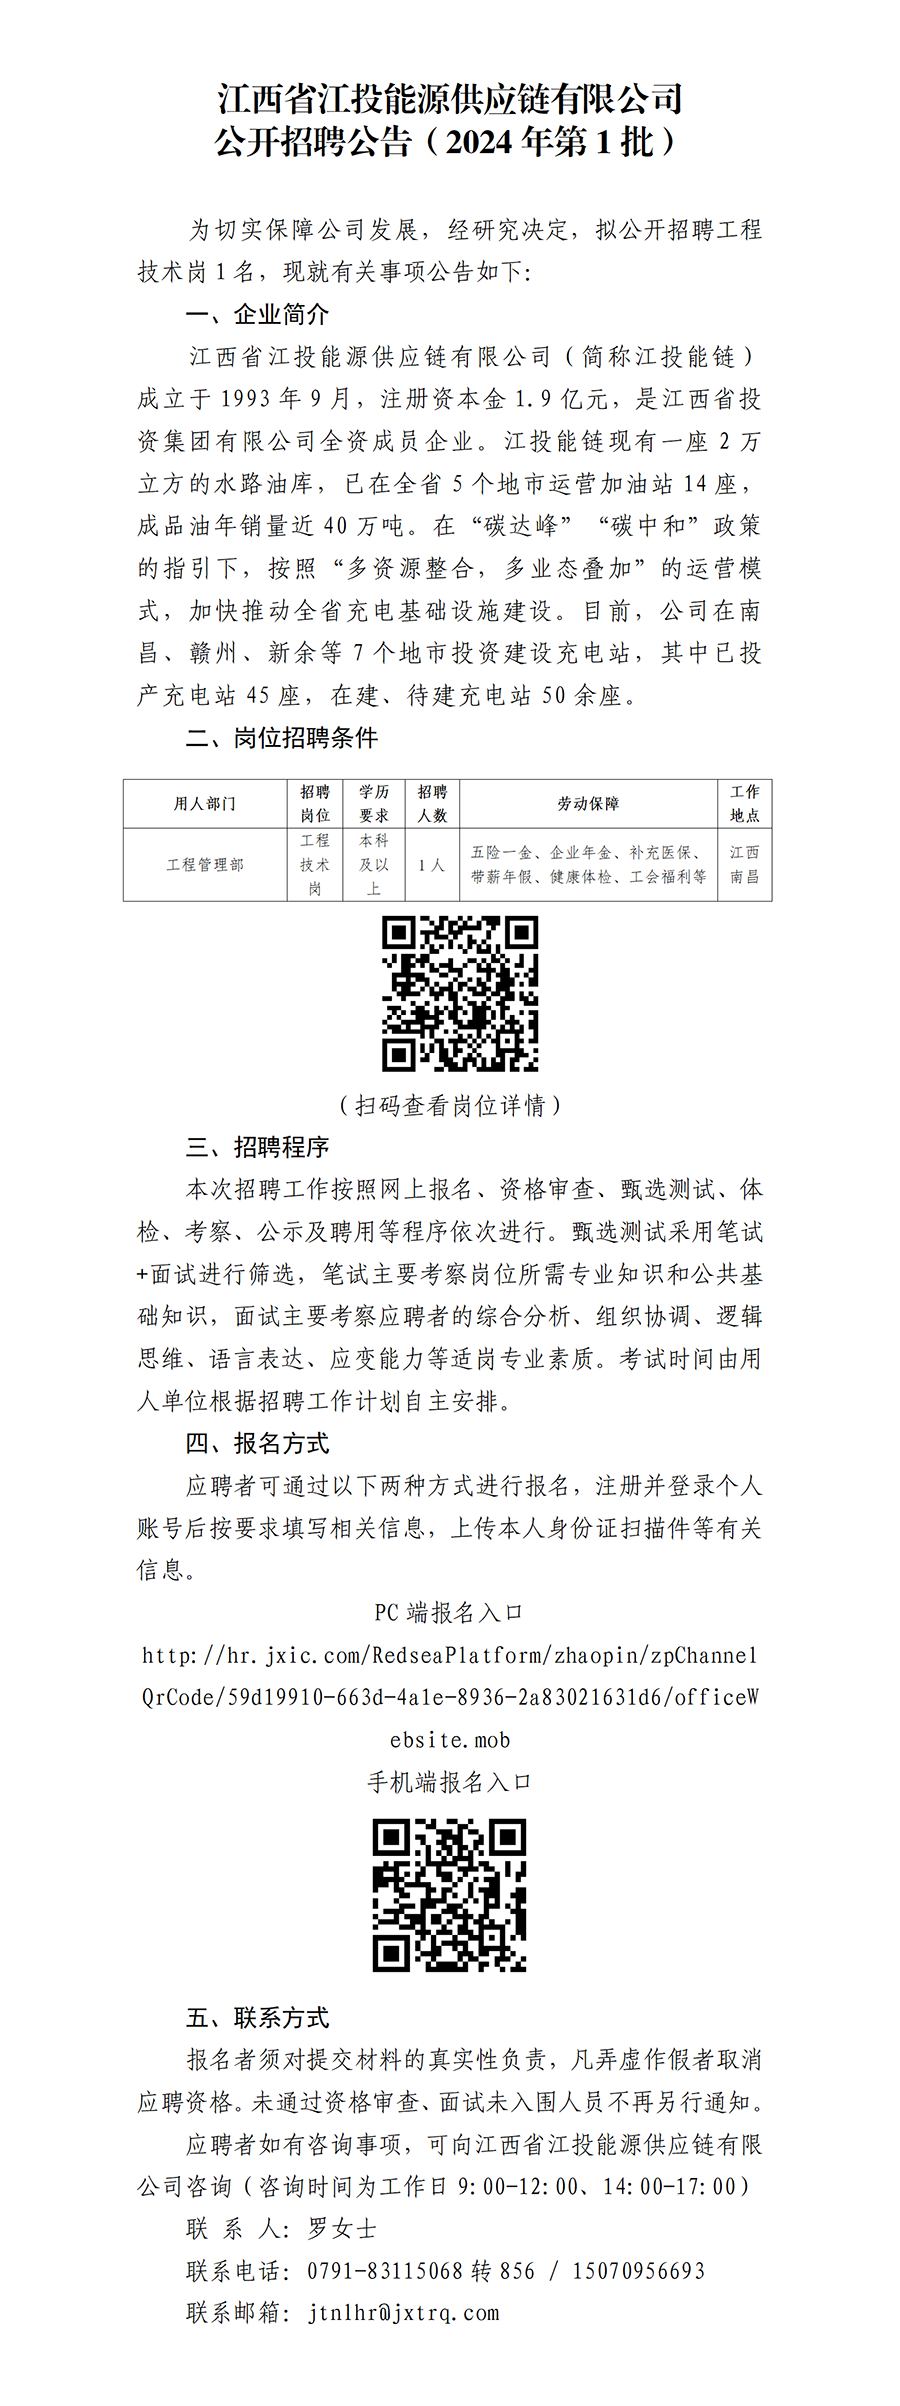 江西省江投能源供应链有限公司公开招聘公告（2024年第1批）(1)_01.png